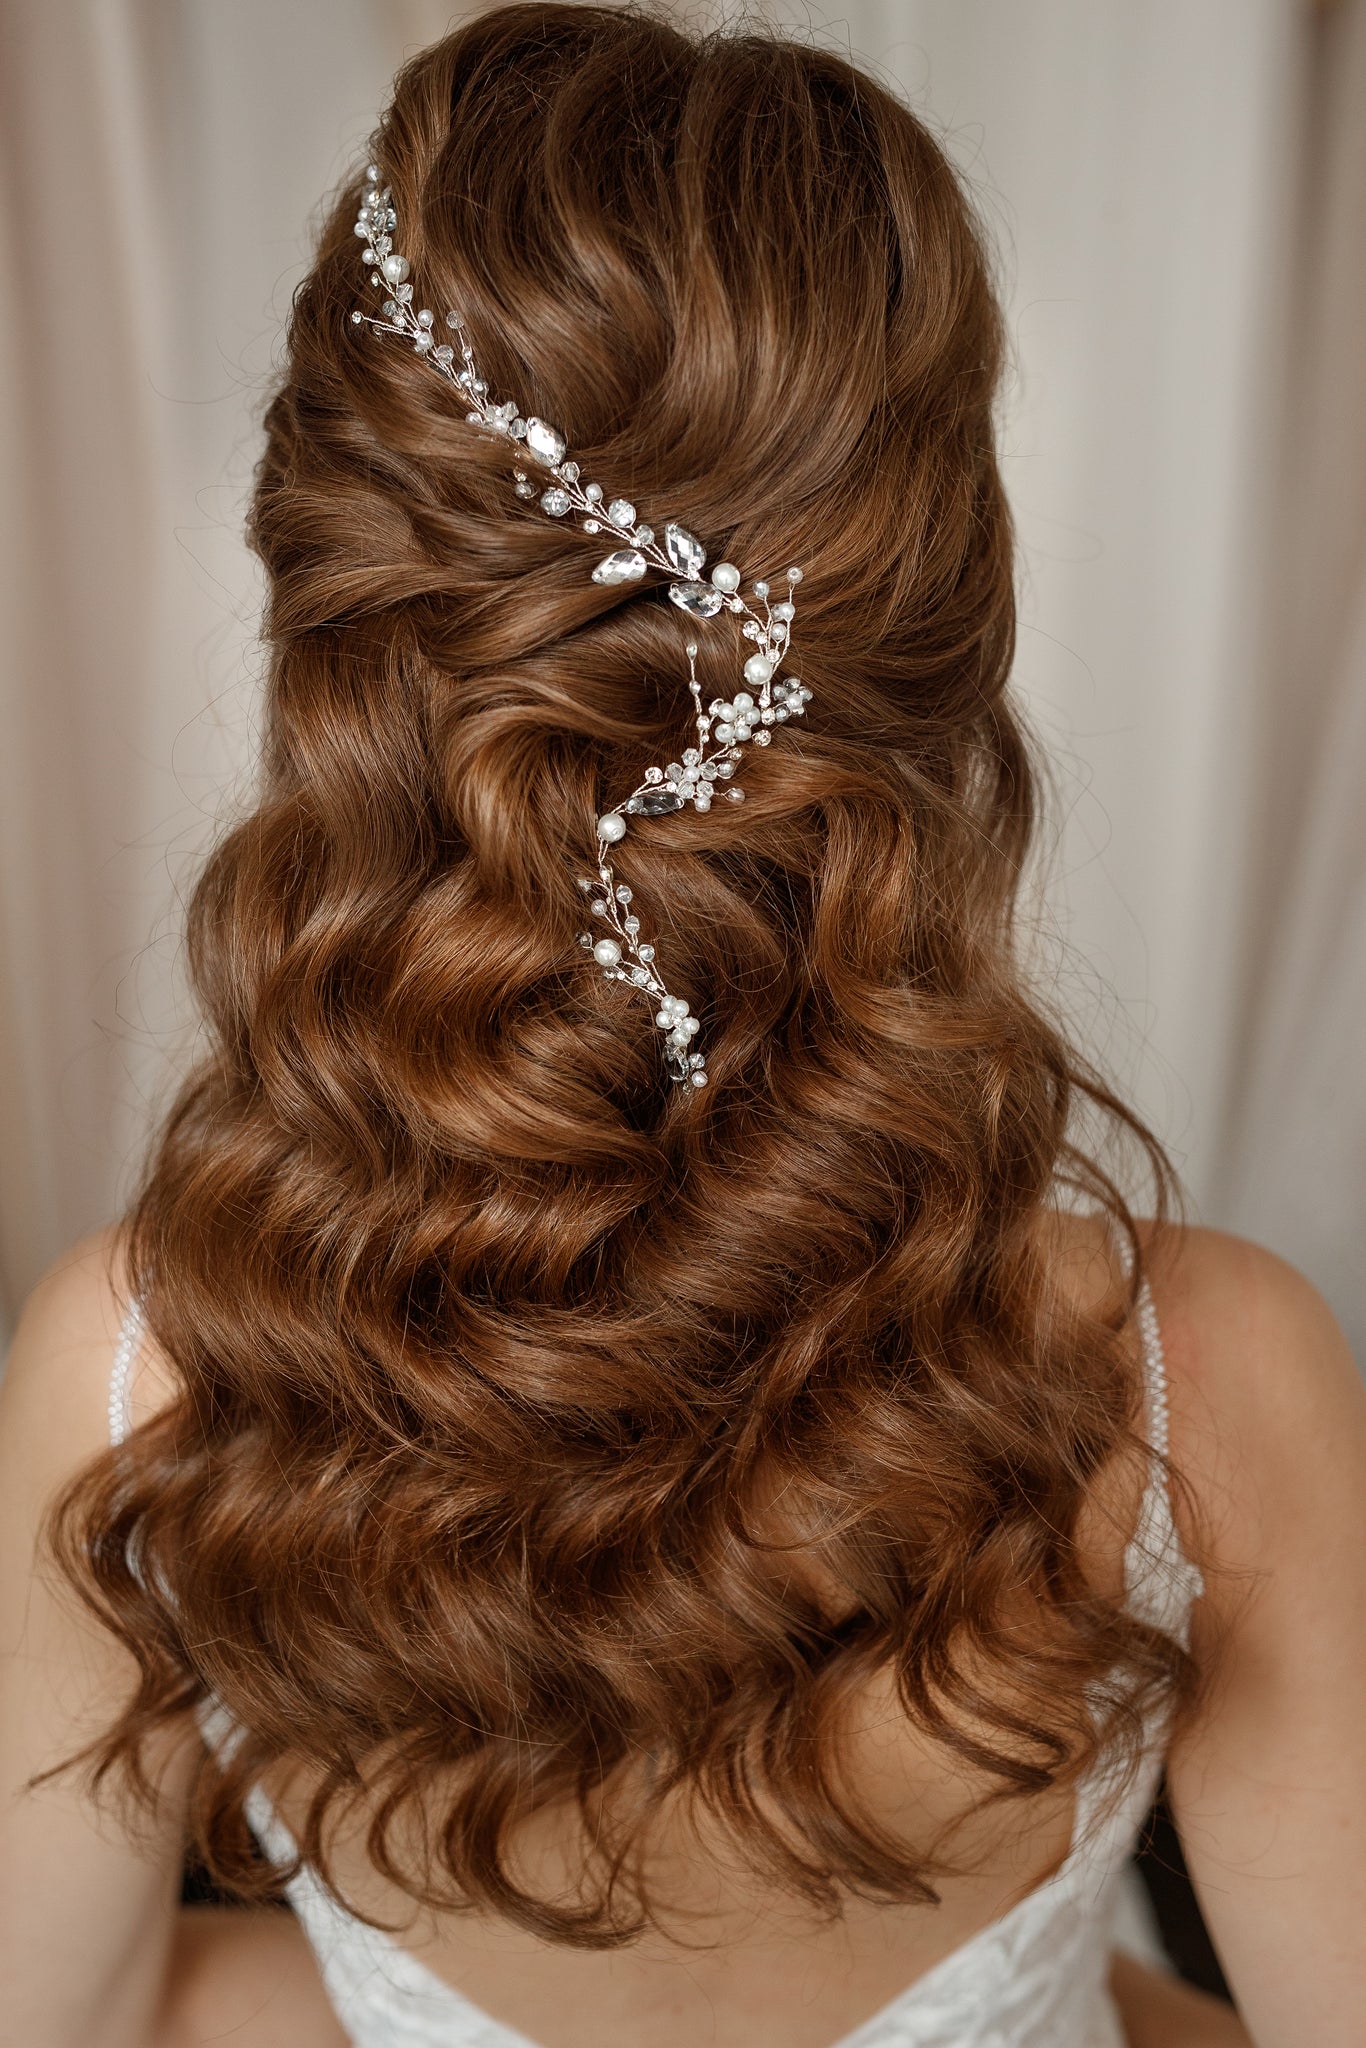 Bridal hair piece, boho wedding hair accessories